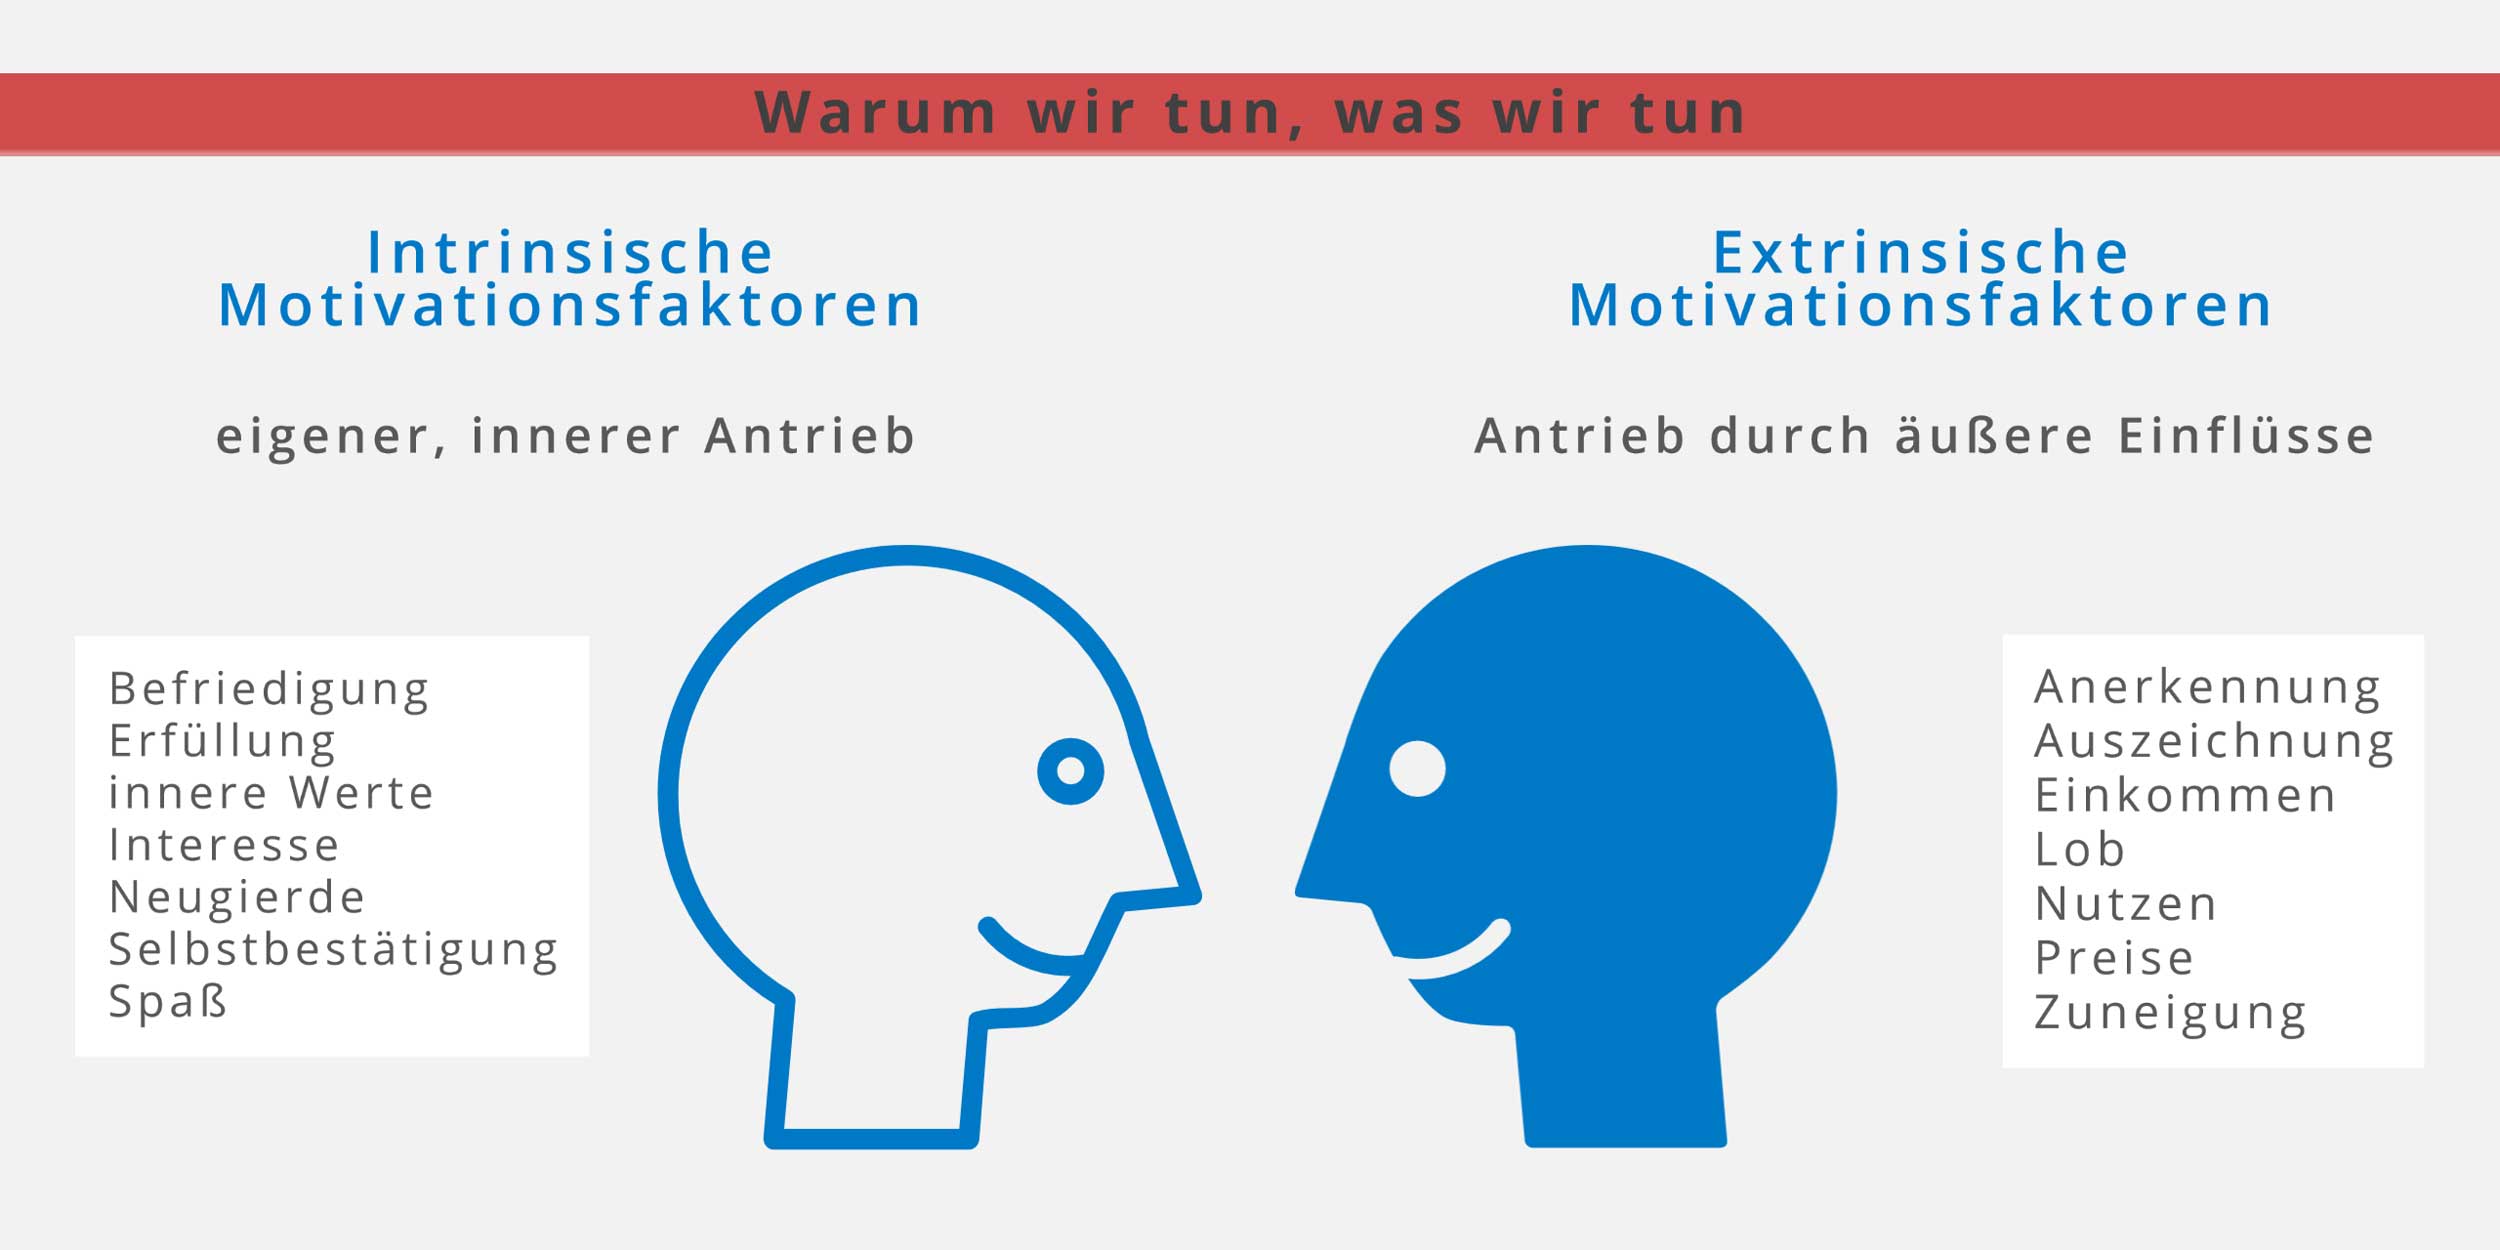 intrinsische und extrinsische Motivationsfaktoren||©TU Chemnitz, in Anlehnung an Siegfried Ferlin